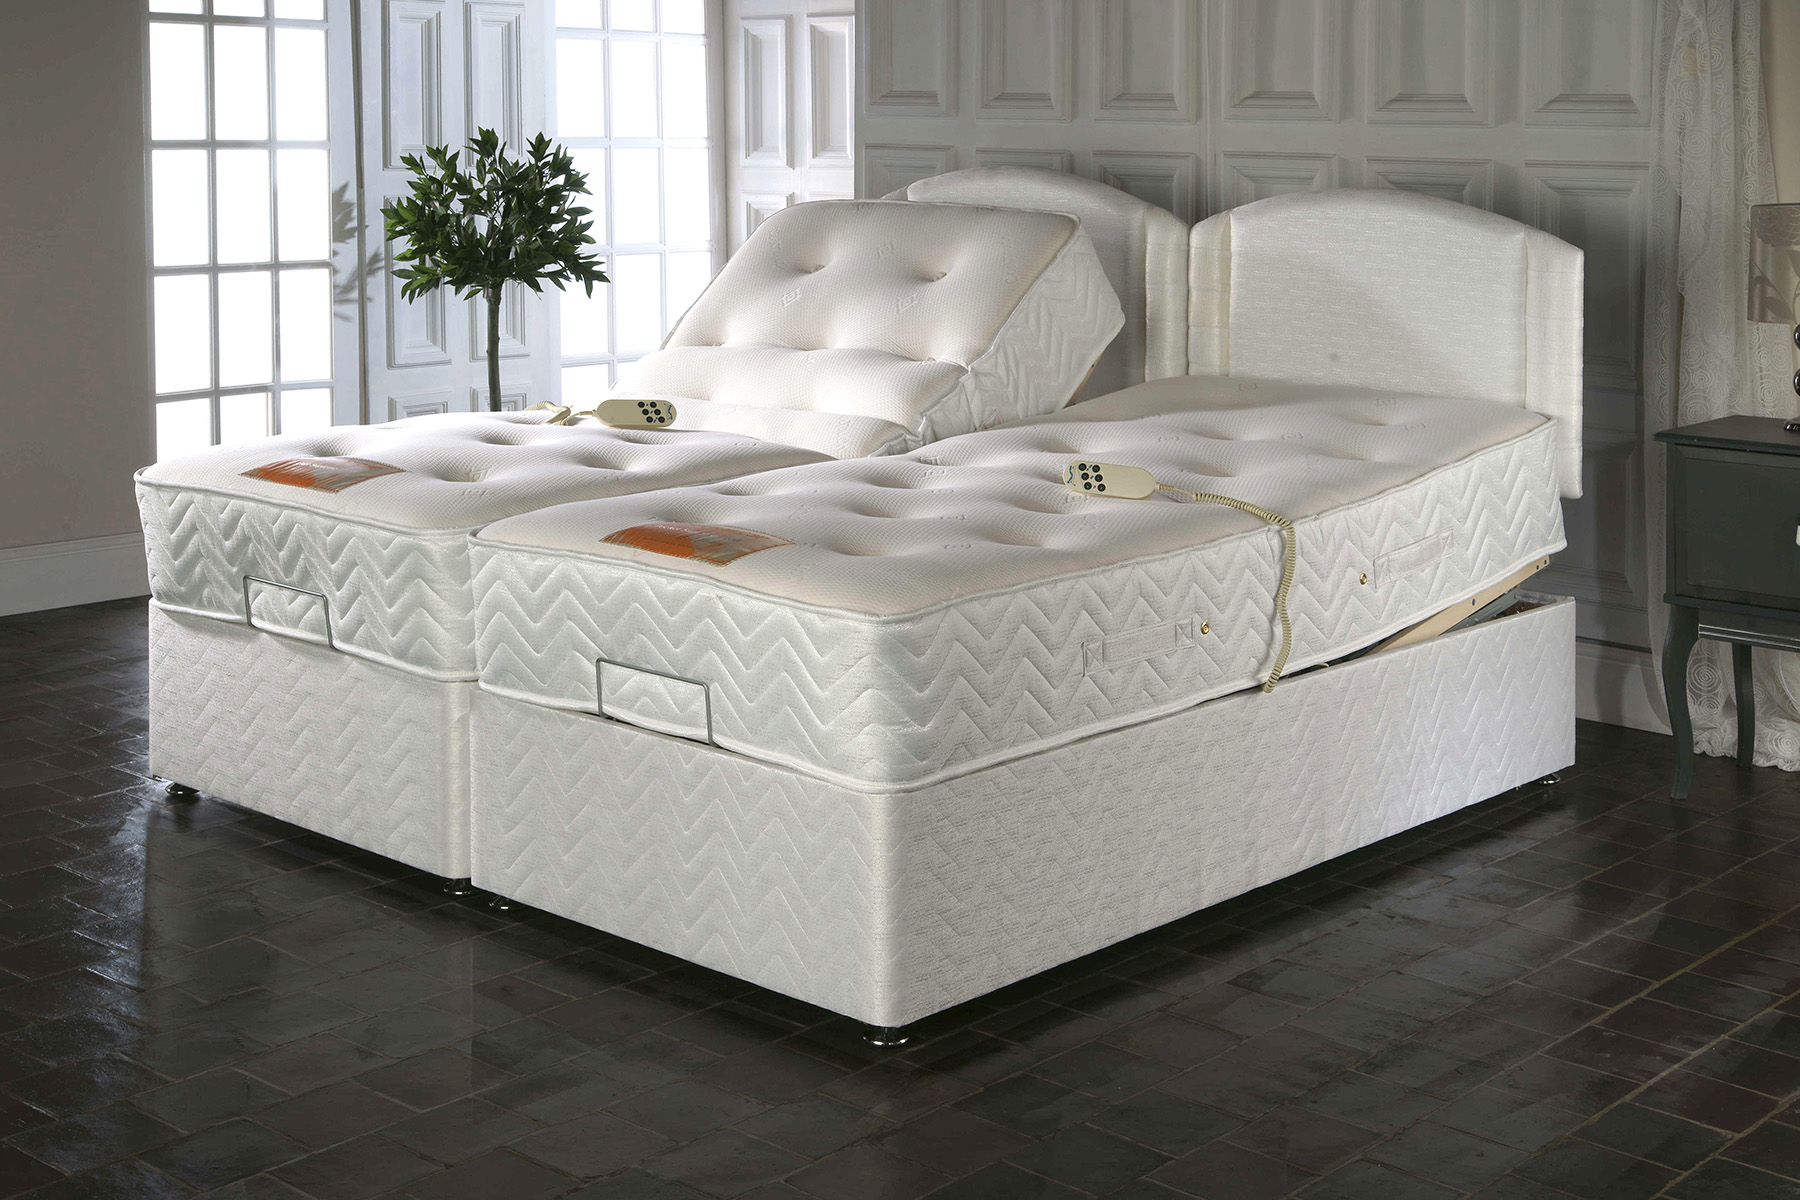 Купить кровать электрическую. Кровать long. Electric Adjustable Beds. Диван Кардифф. Comfortobale bed4.